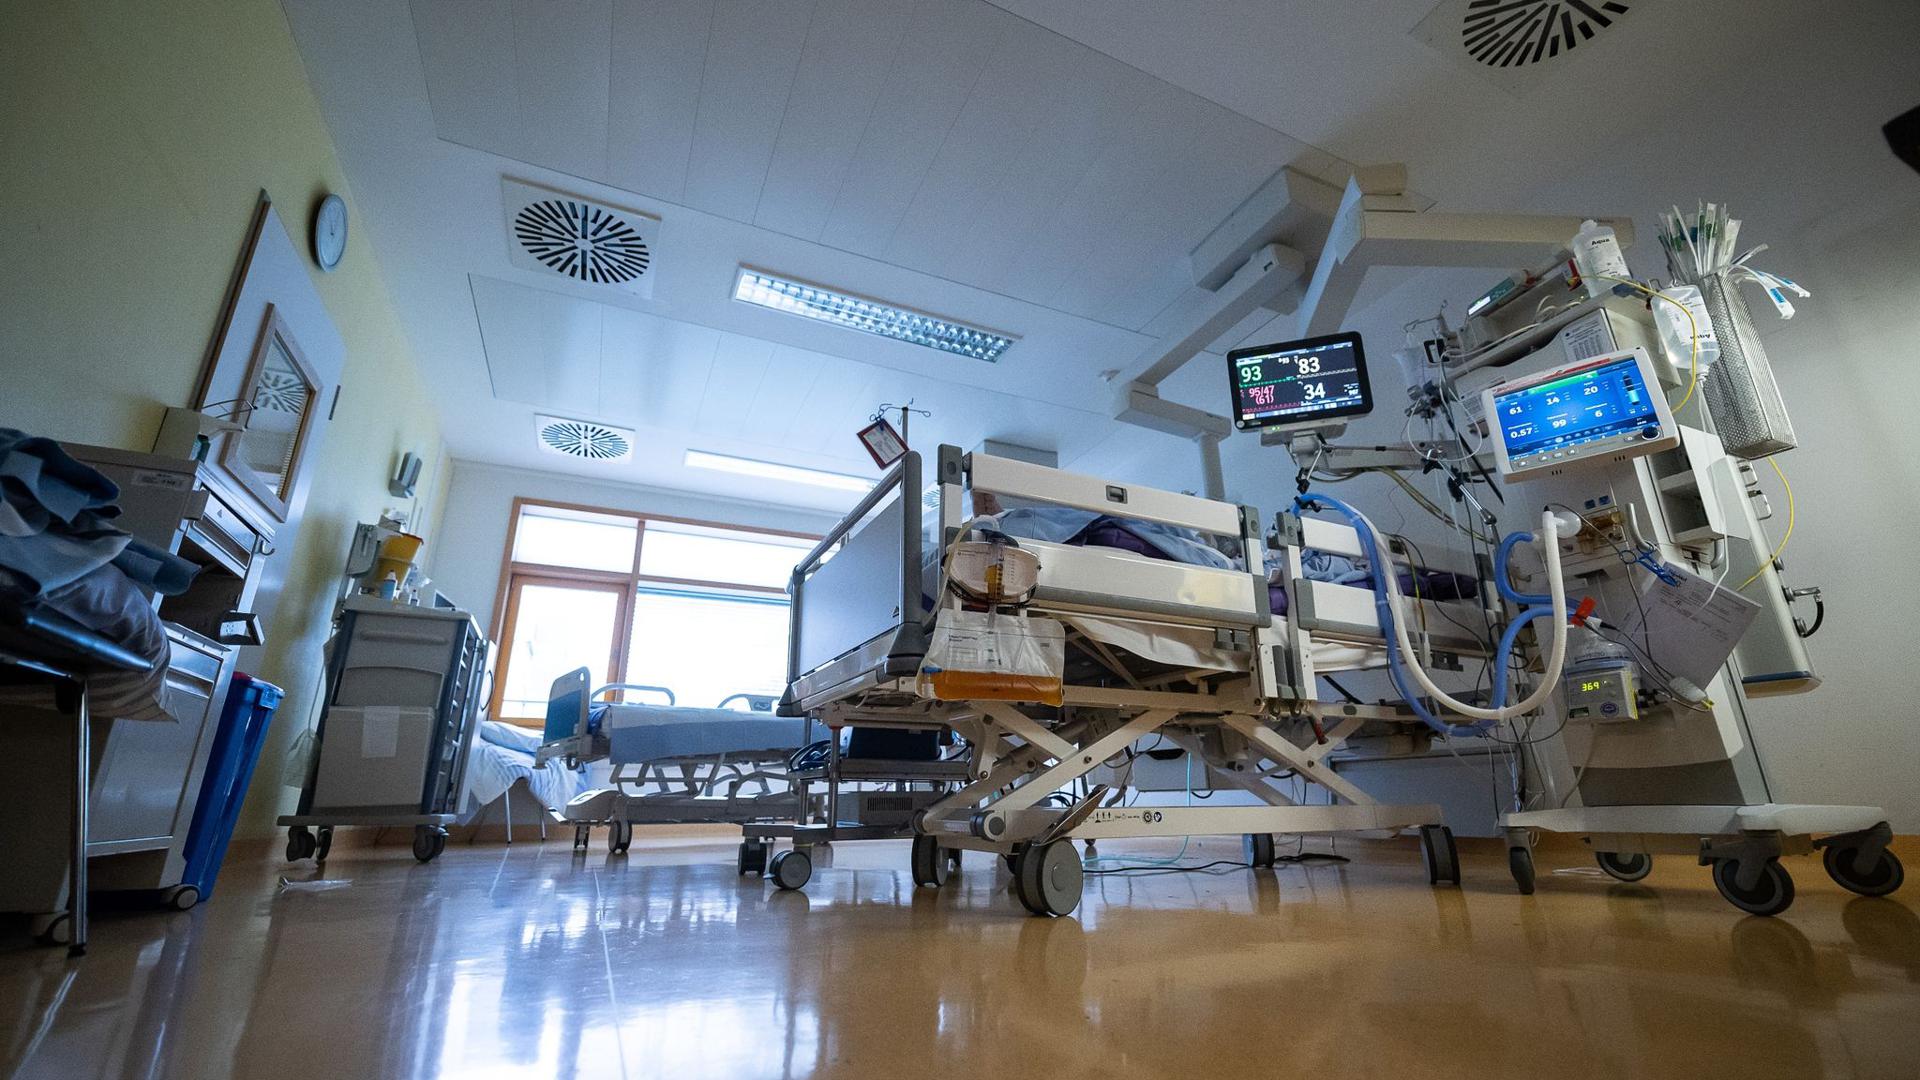 Ein Intensivbett, in dem ein Covid-19-Patient liegt, steht auf einer Intensivstation eines Klinikums. (Archivbild)